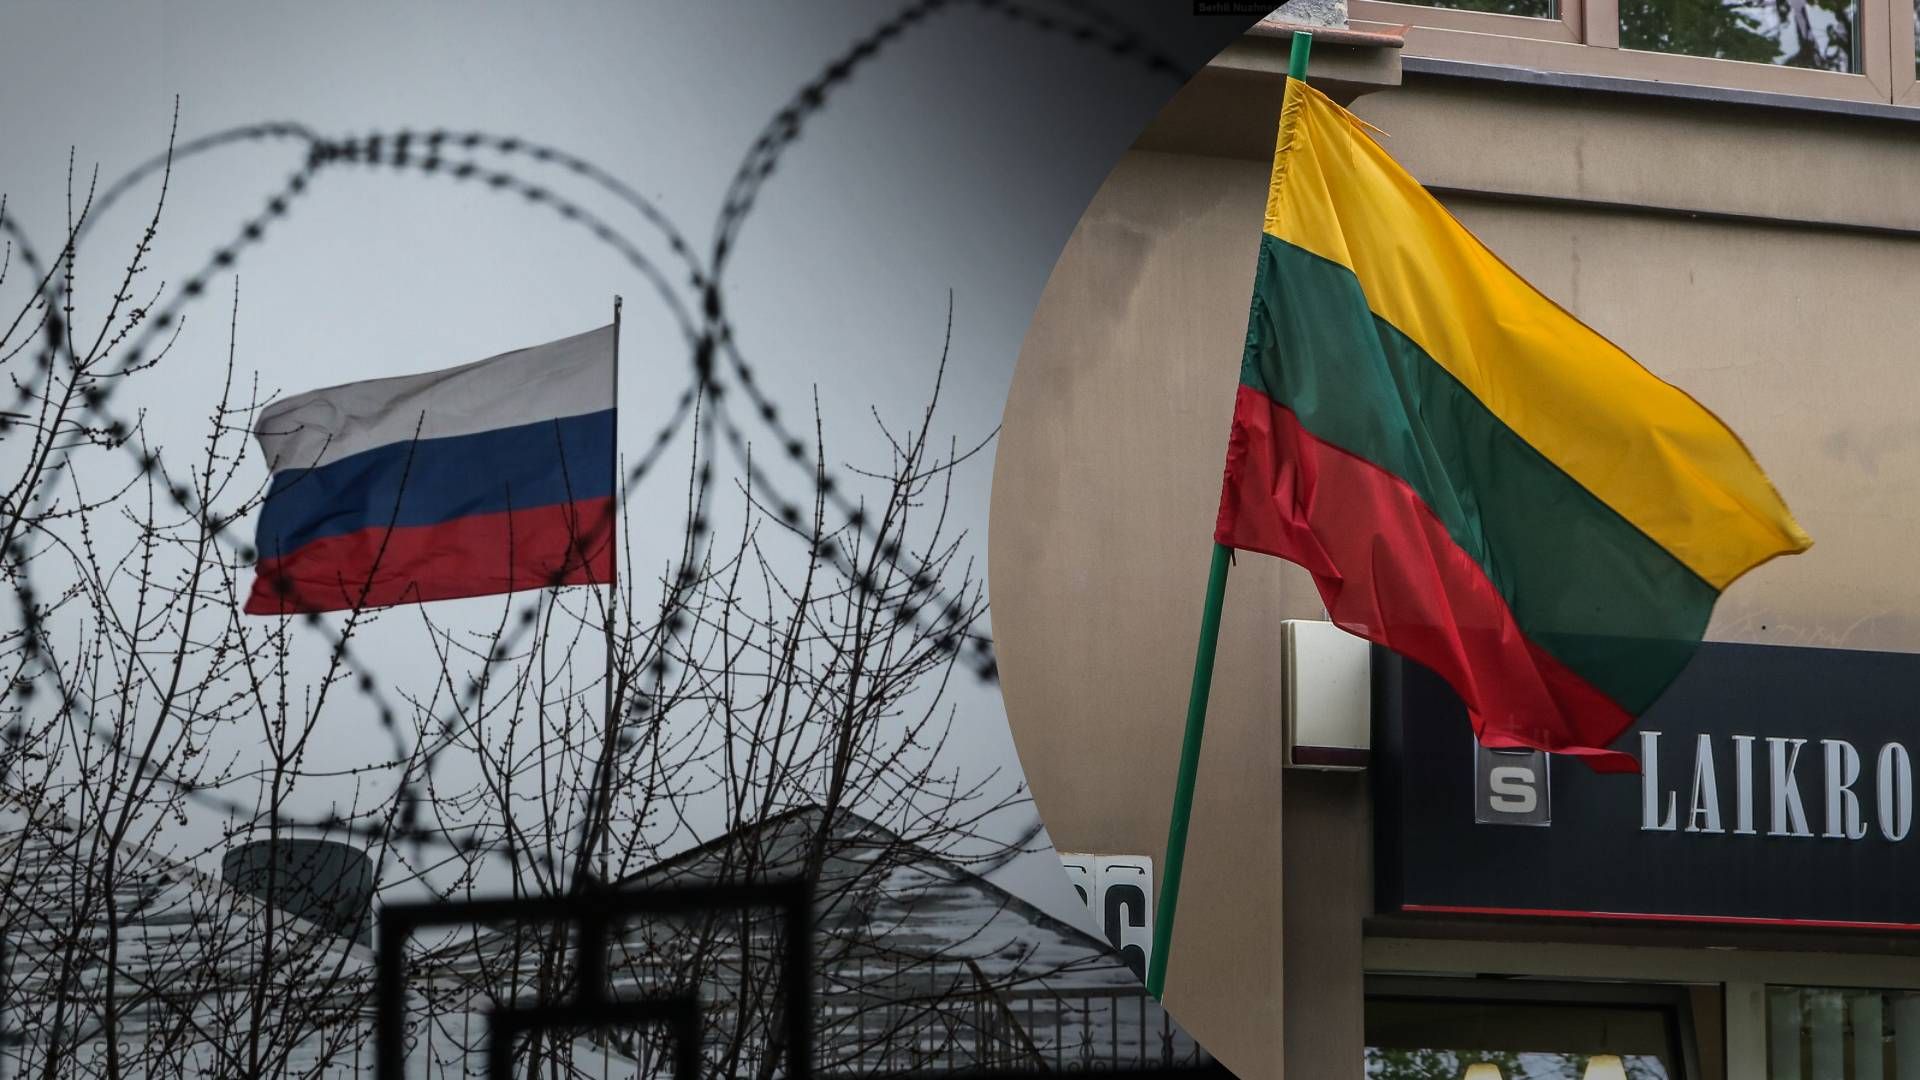 “Ми відчуваємо, що війна близько”: Литва готується до можливого конфлікту з Росією - 24 Канал